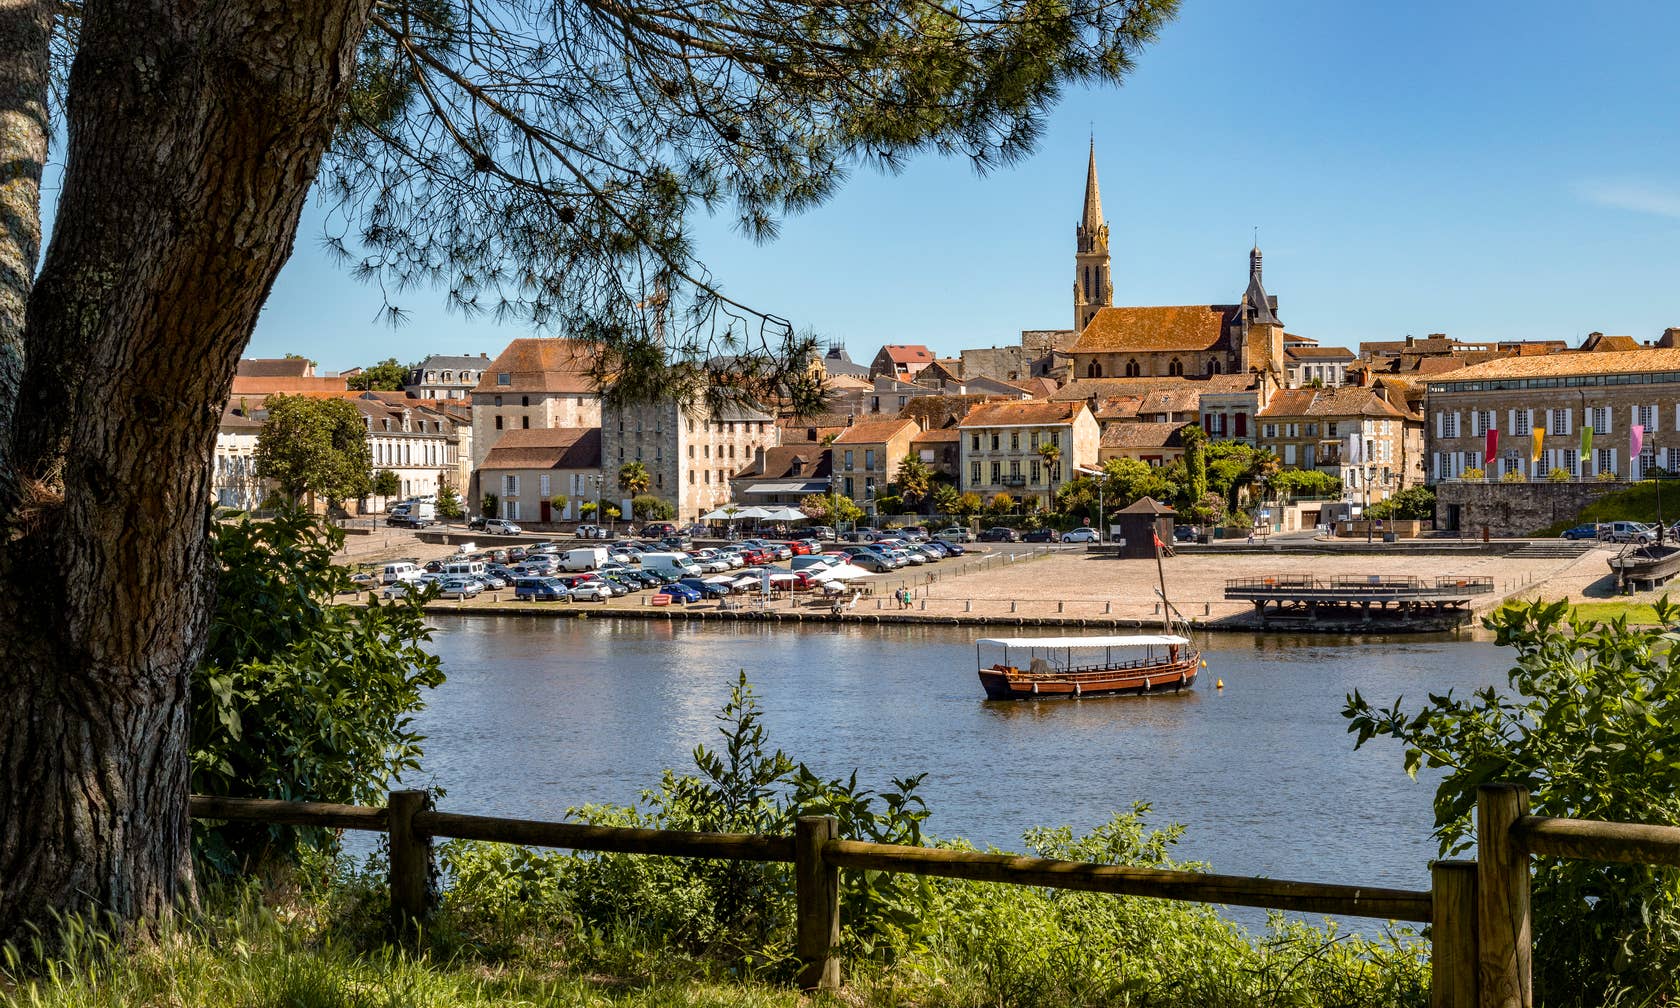 Holiday rentals in Dordogne